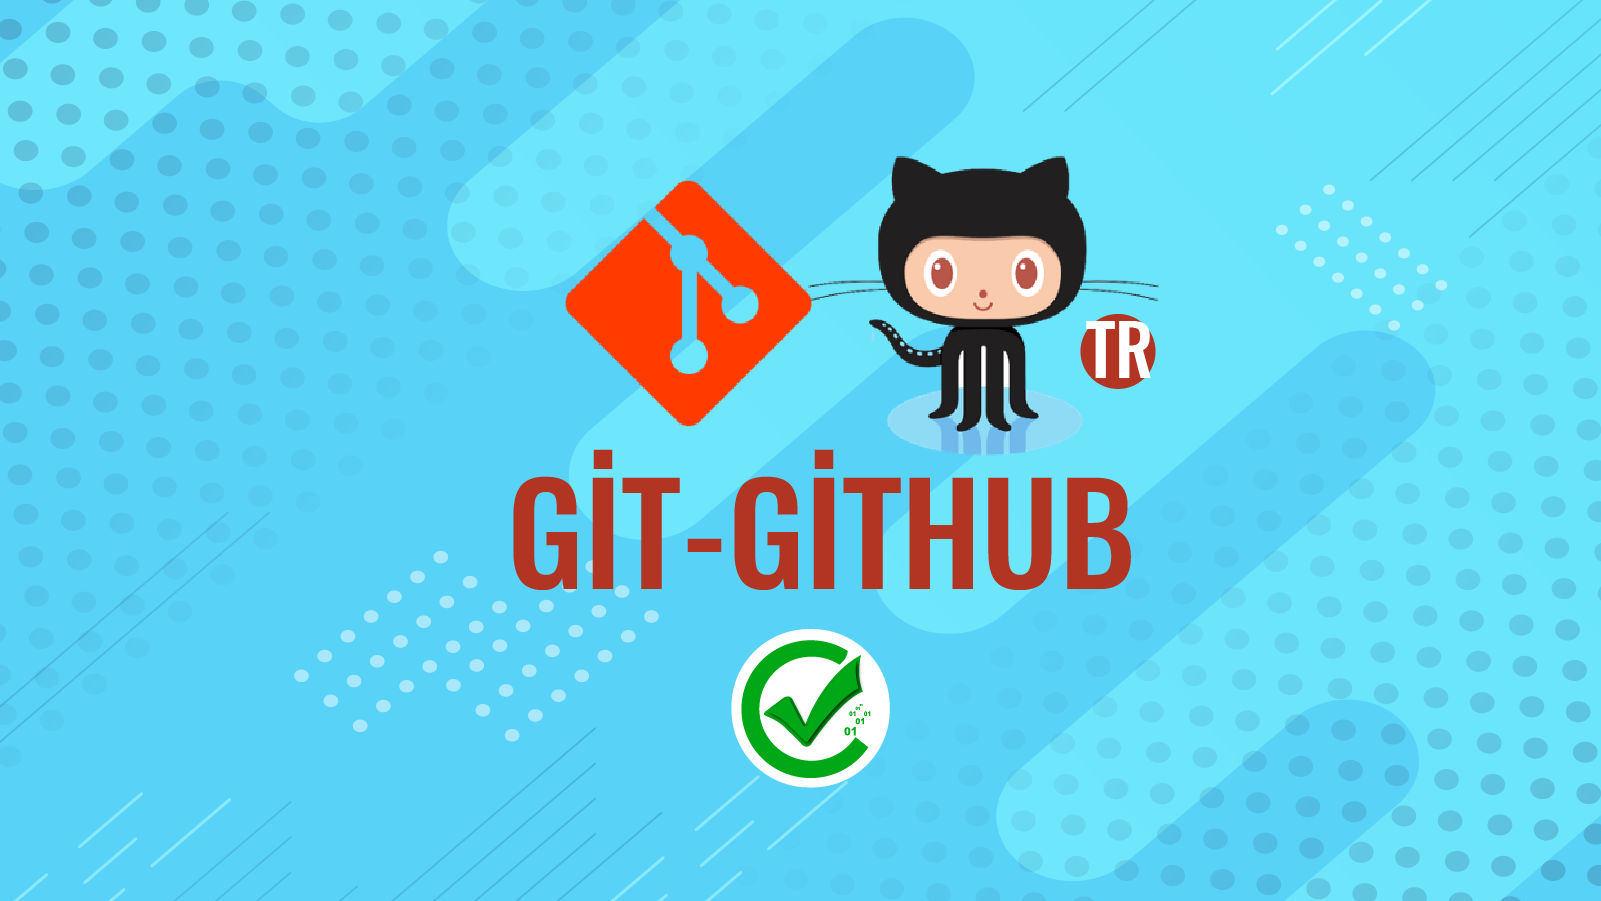 Git-GitHub 129 